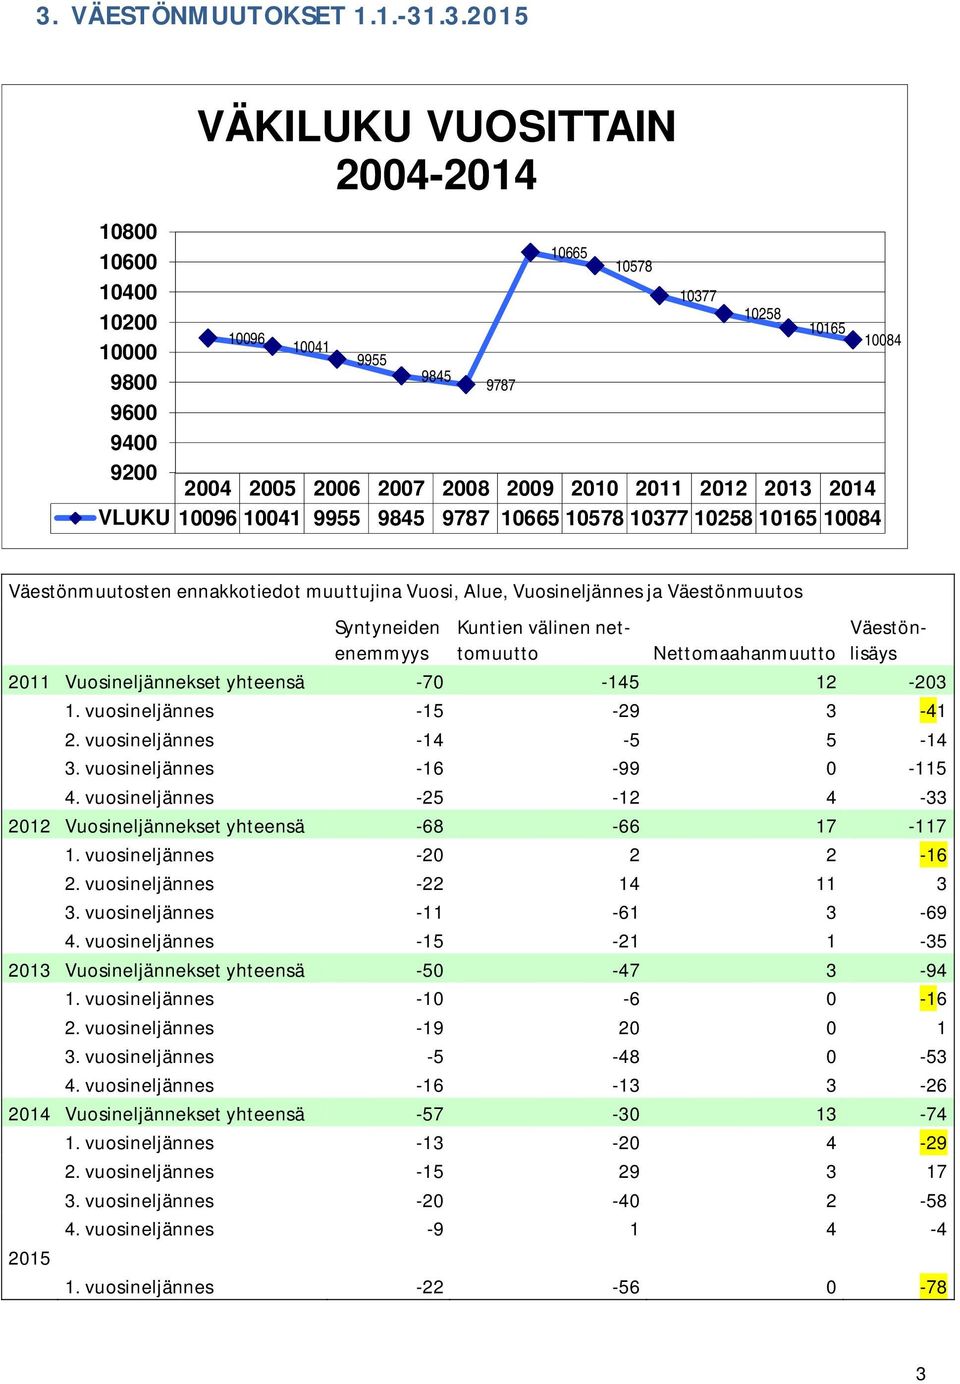 Syntyneiden enemmyys Kuntien välinen nettomuutto Nettomaahanmuutto Väestönlisäys 2011 Vuosineljännekset yhteensä -70-145 12-203 1. vuosineljännes -15-29 3-41 2. vuosineljännes -14-5 5-14 3.